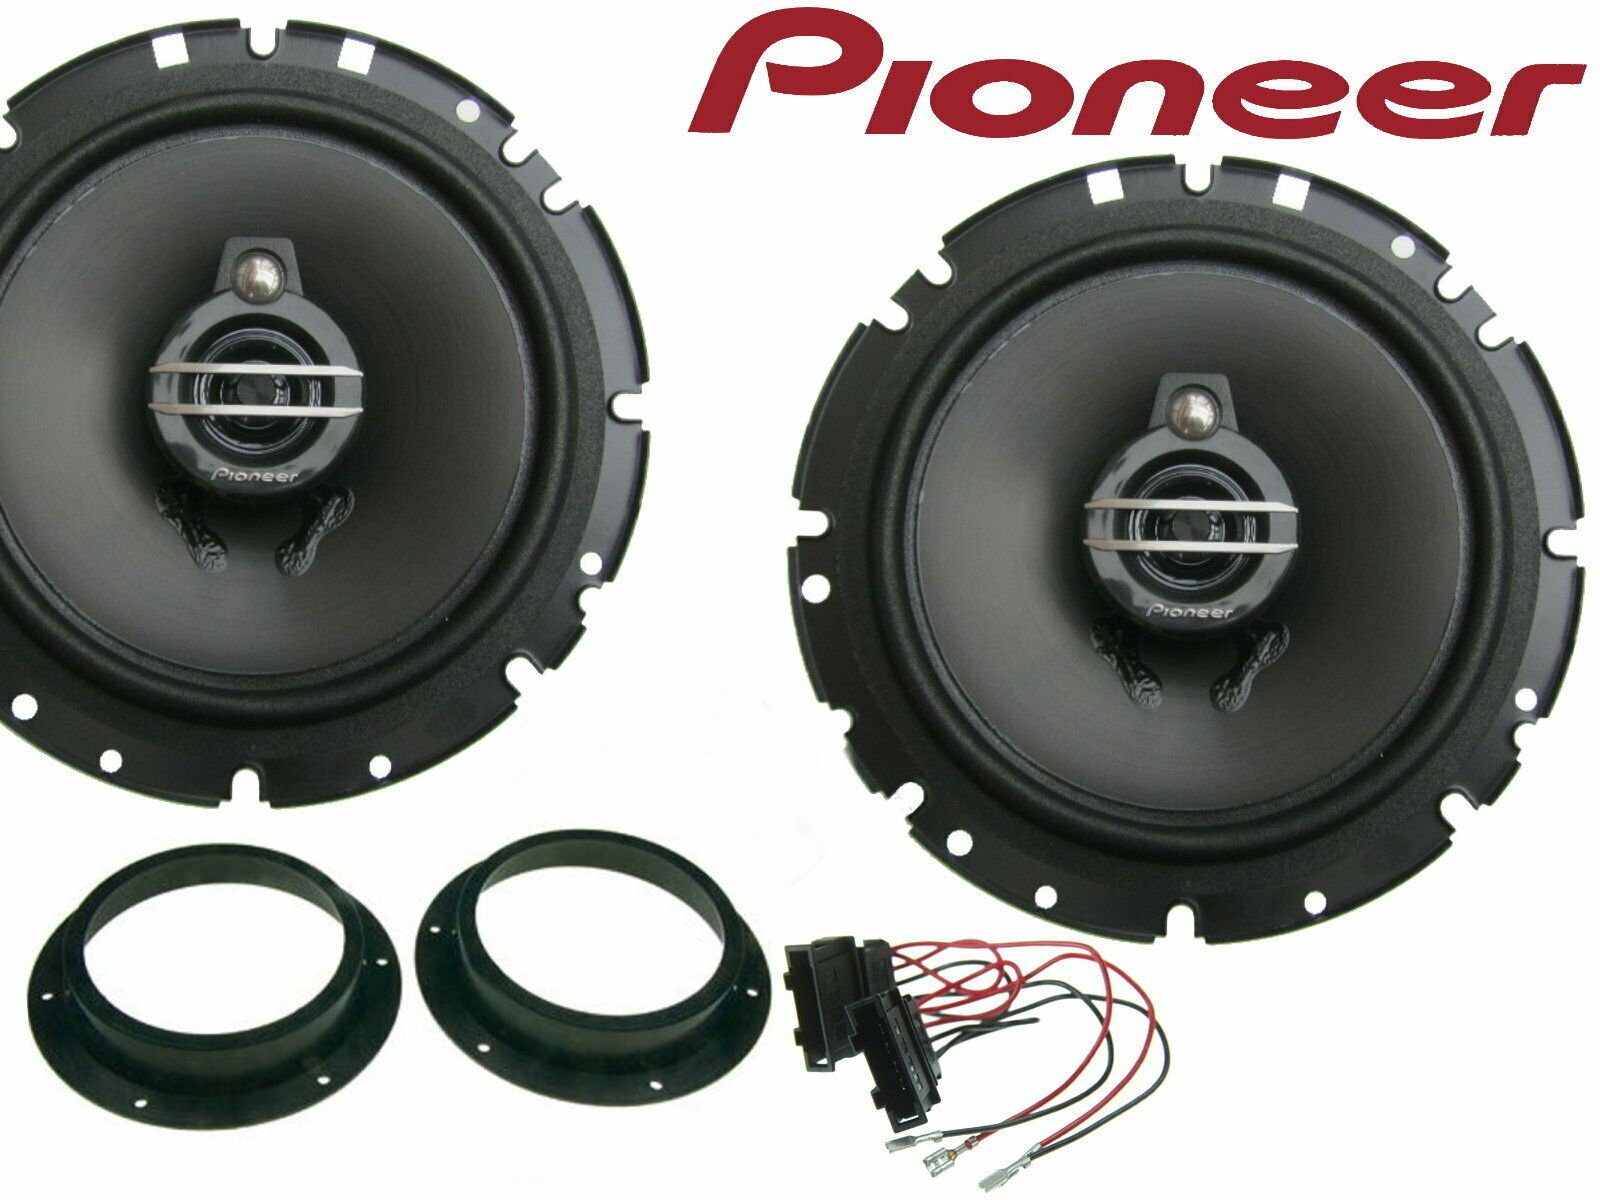 DSX Pioneer 3 Wege passend für VW Golf 5 03-20 Lautsprecher Set Tür Vorn  300 Watt Auto-Lautsprecher (40 W) online kaufen | OTTO